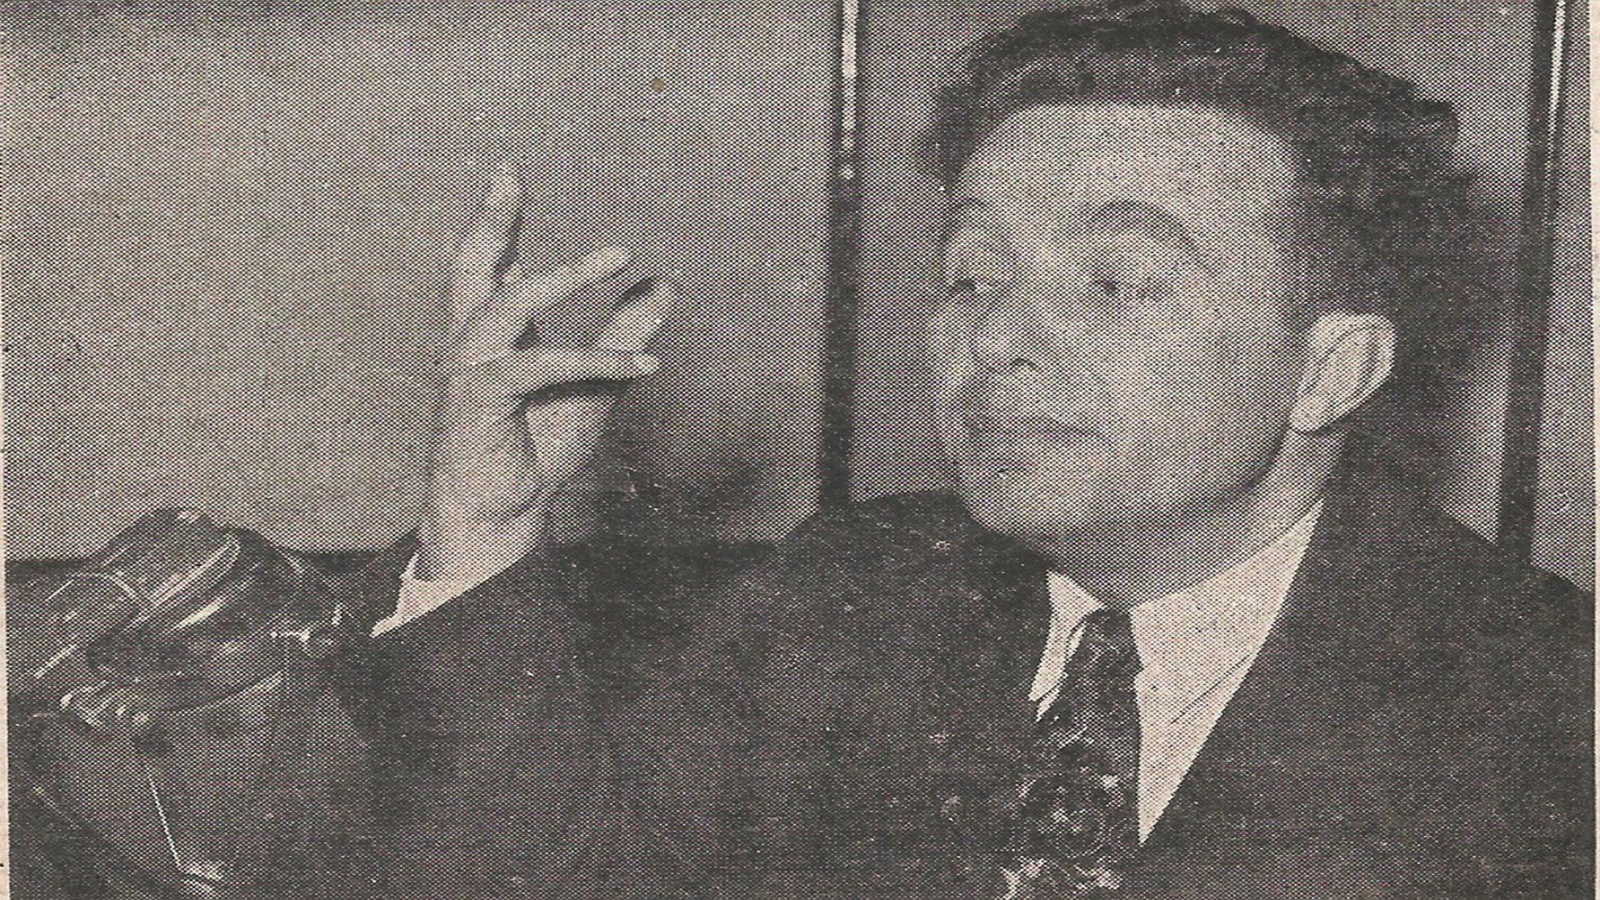 سعيد عقل في ندوة "الإذاعة السورية"، أيلول 1953.